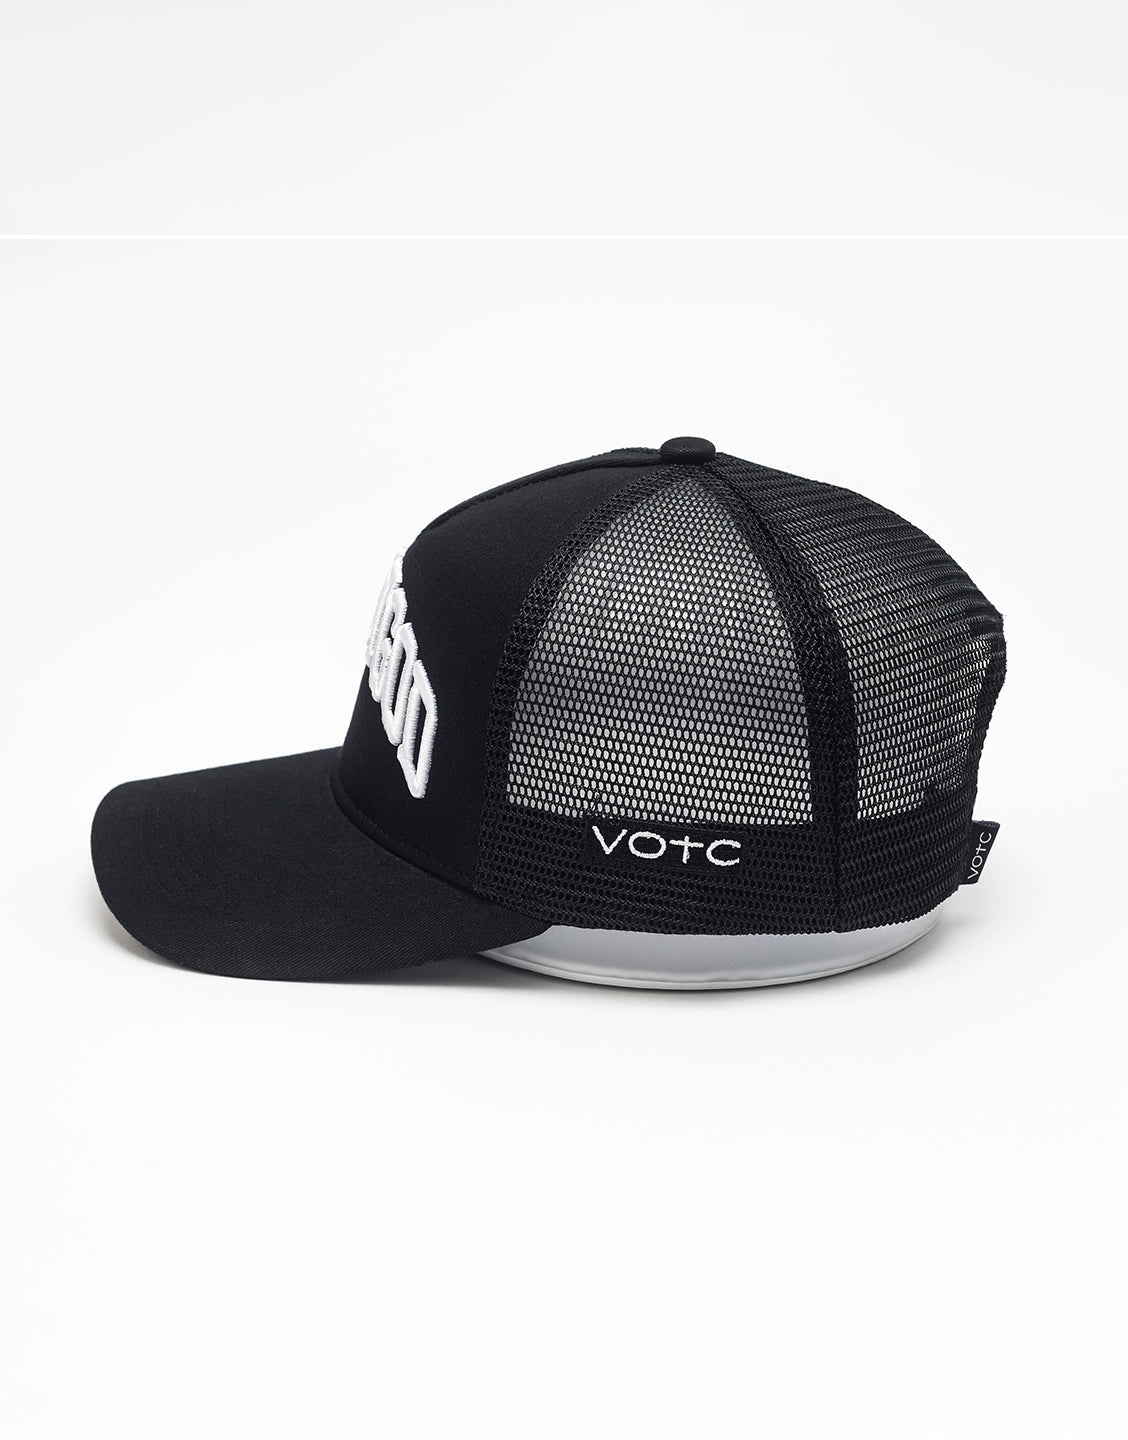 Trust God Premium Trucker Hat - Black - VOTC Clothing